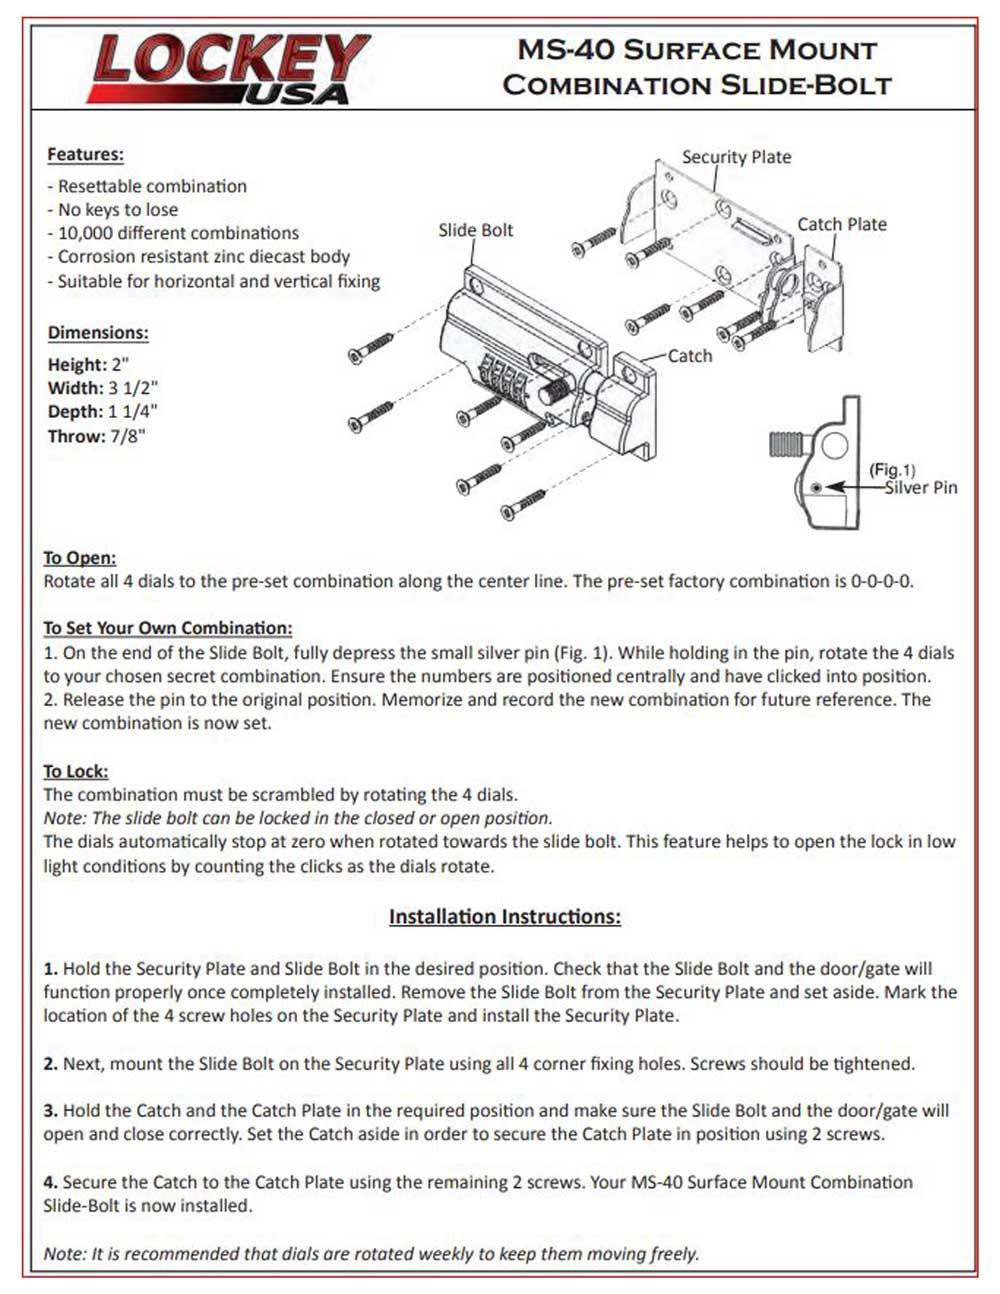 Lockey-MS-40-Instructions